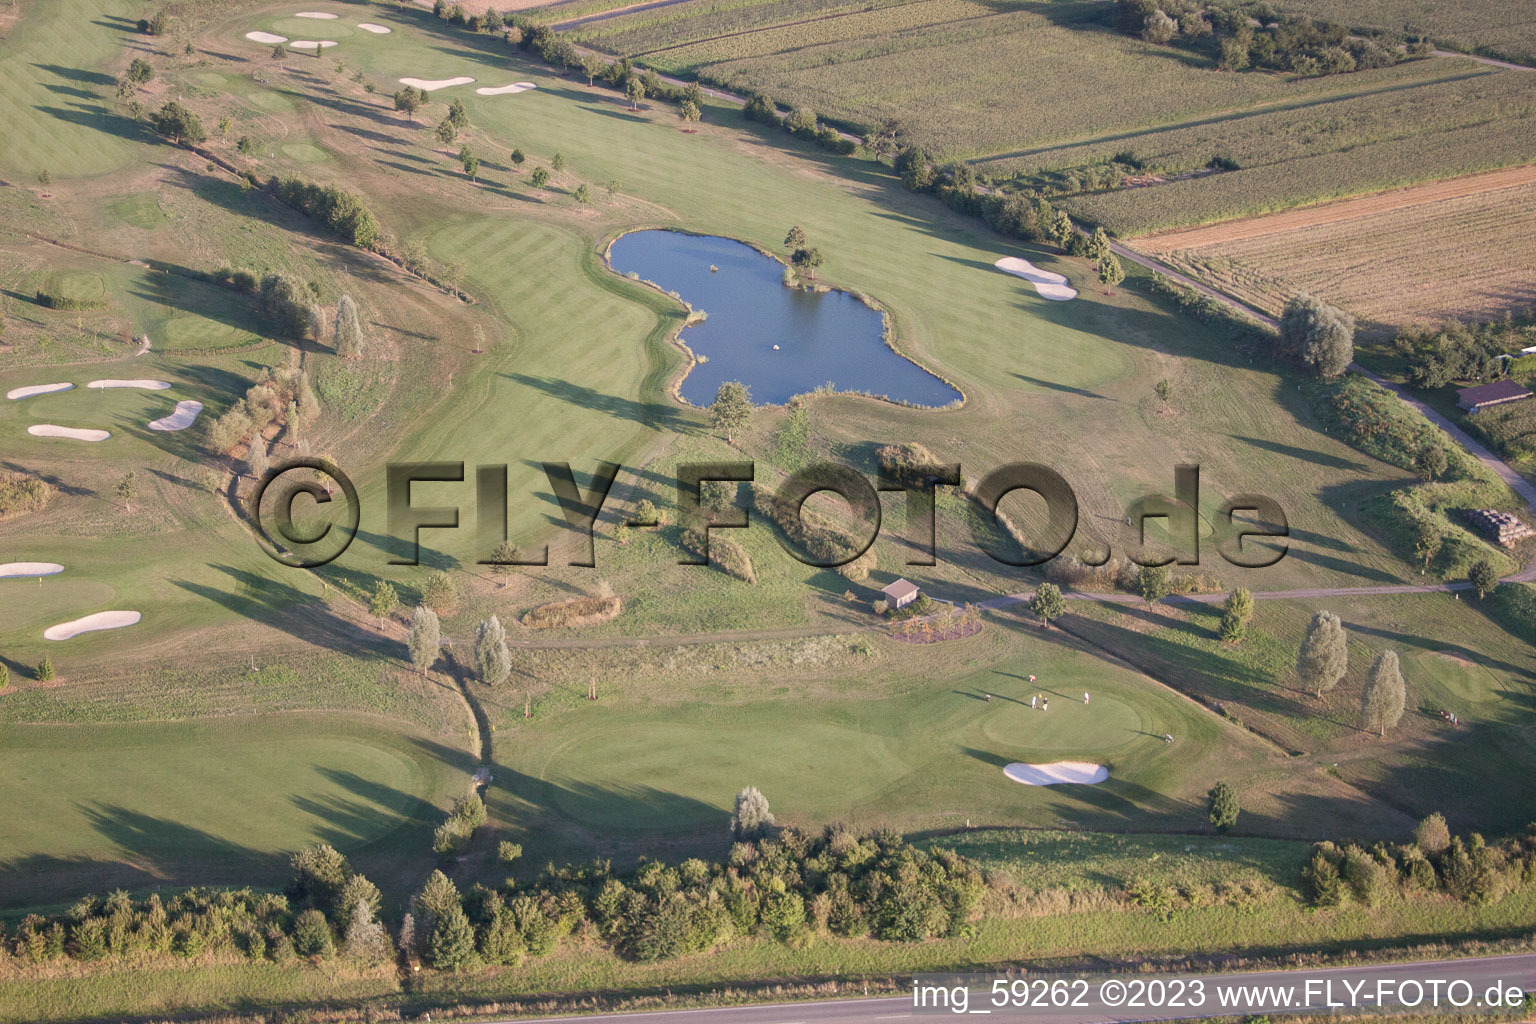 Golfclub Urloffen in Appenweier im Bundesland Baden-Württemberg, Deutschland aus der Luft betrachtet